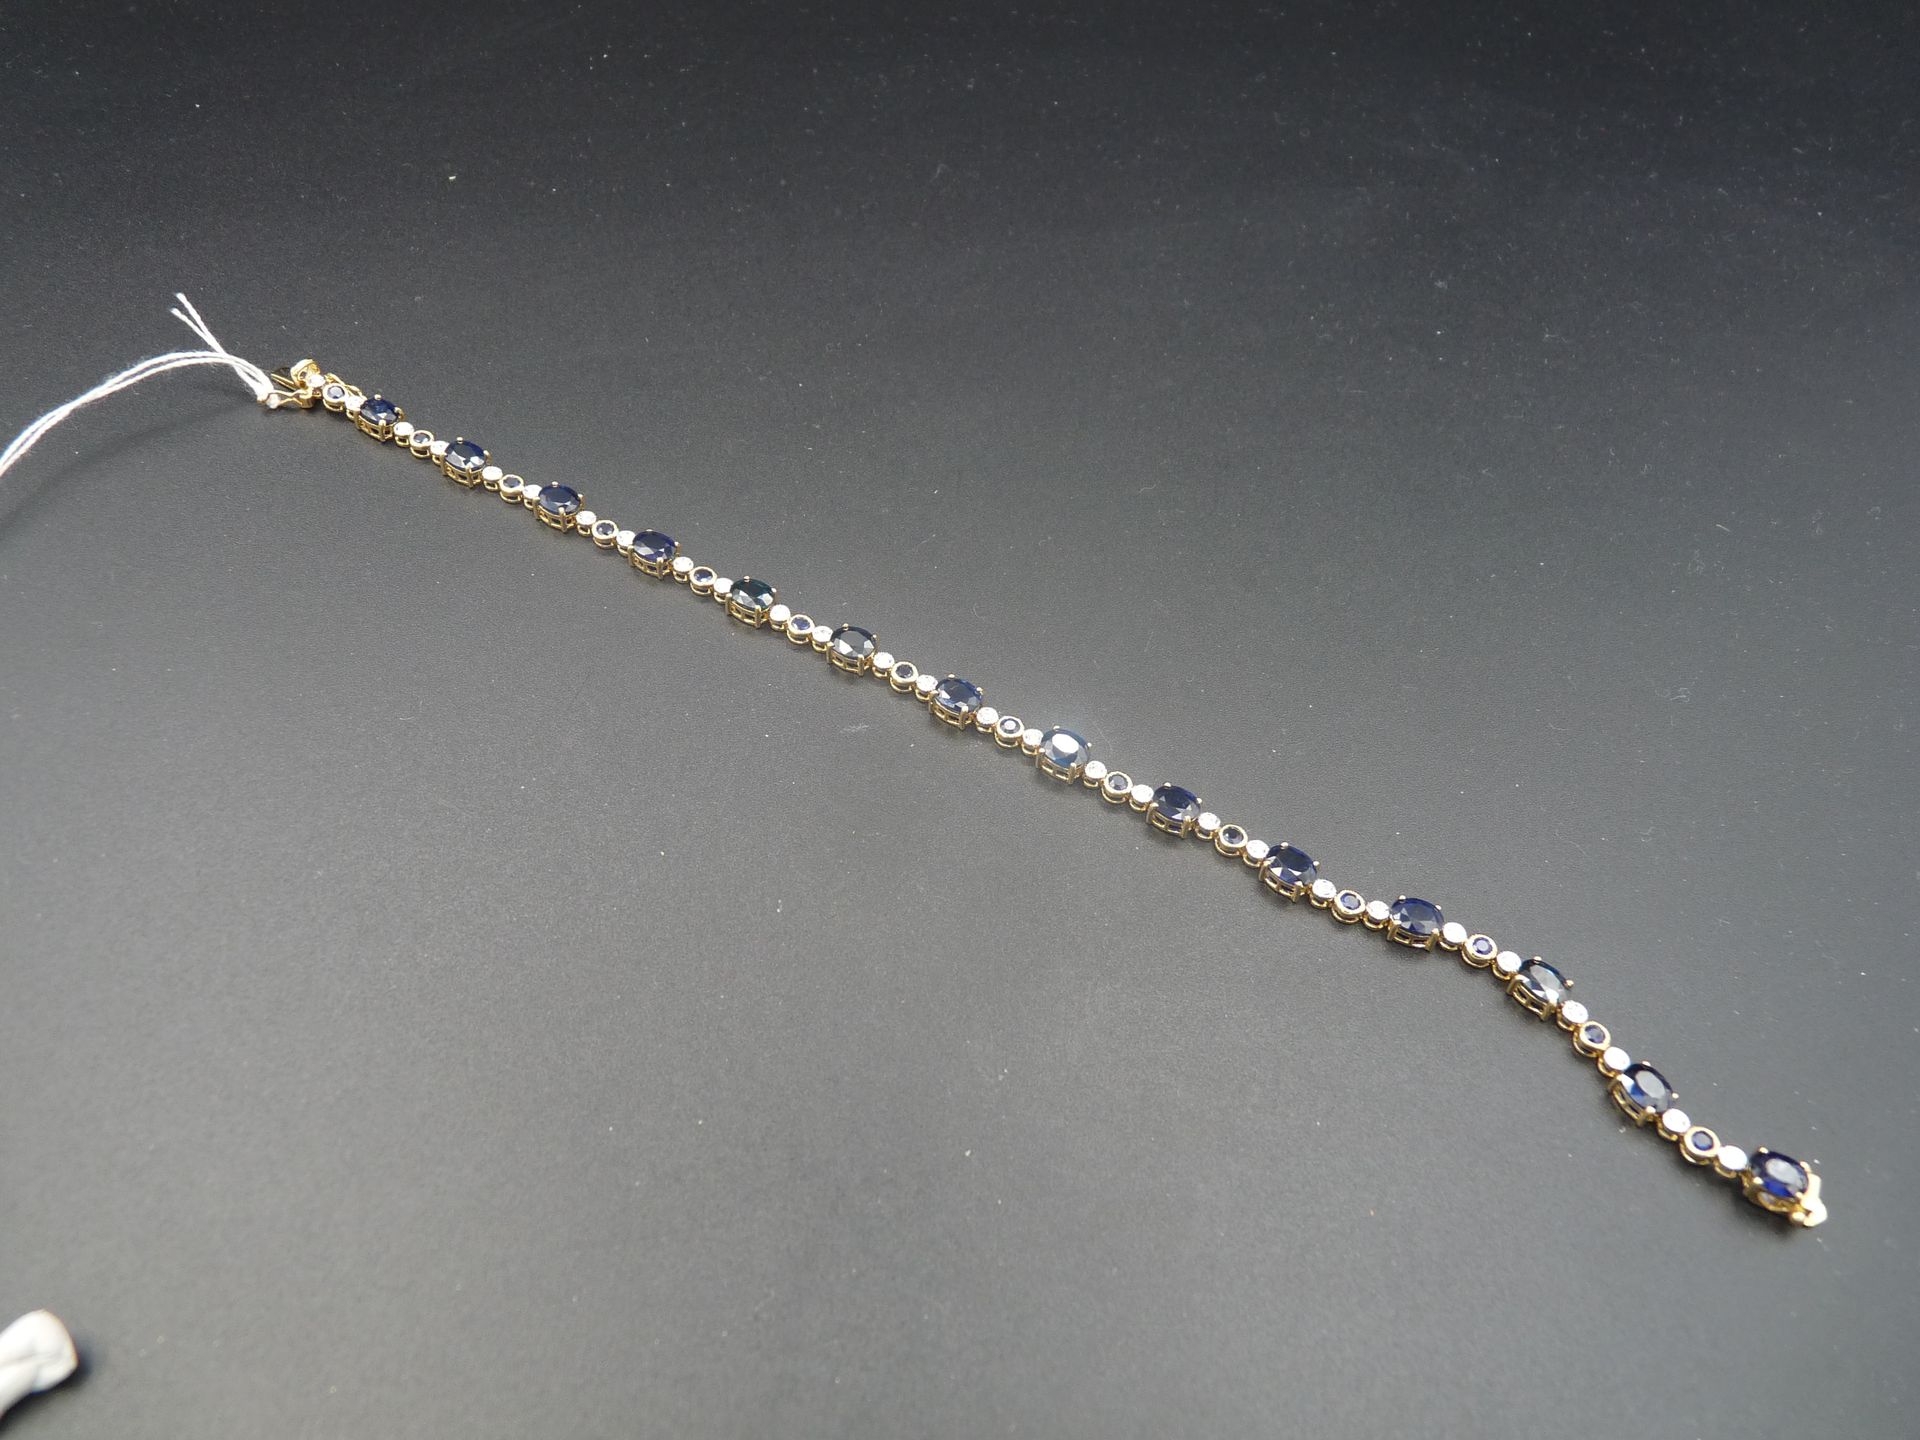 Null 双色18K（750/oo）金线手镯，由重约8克拉的椭圆形蓝宝石组成，与镶嵌有圆形蓝宝石和钻石的链节交替。长度：18厘米。毛重：7.2克。